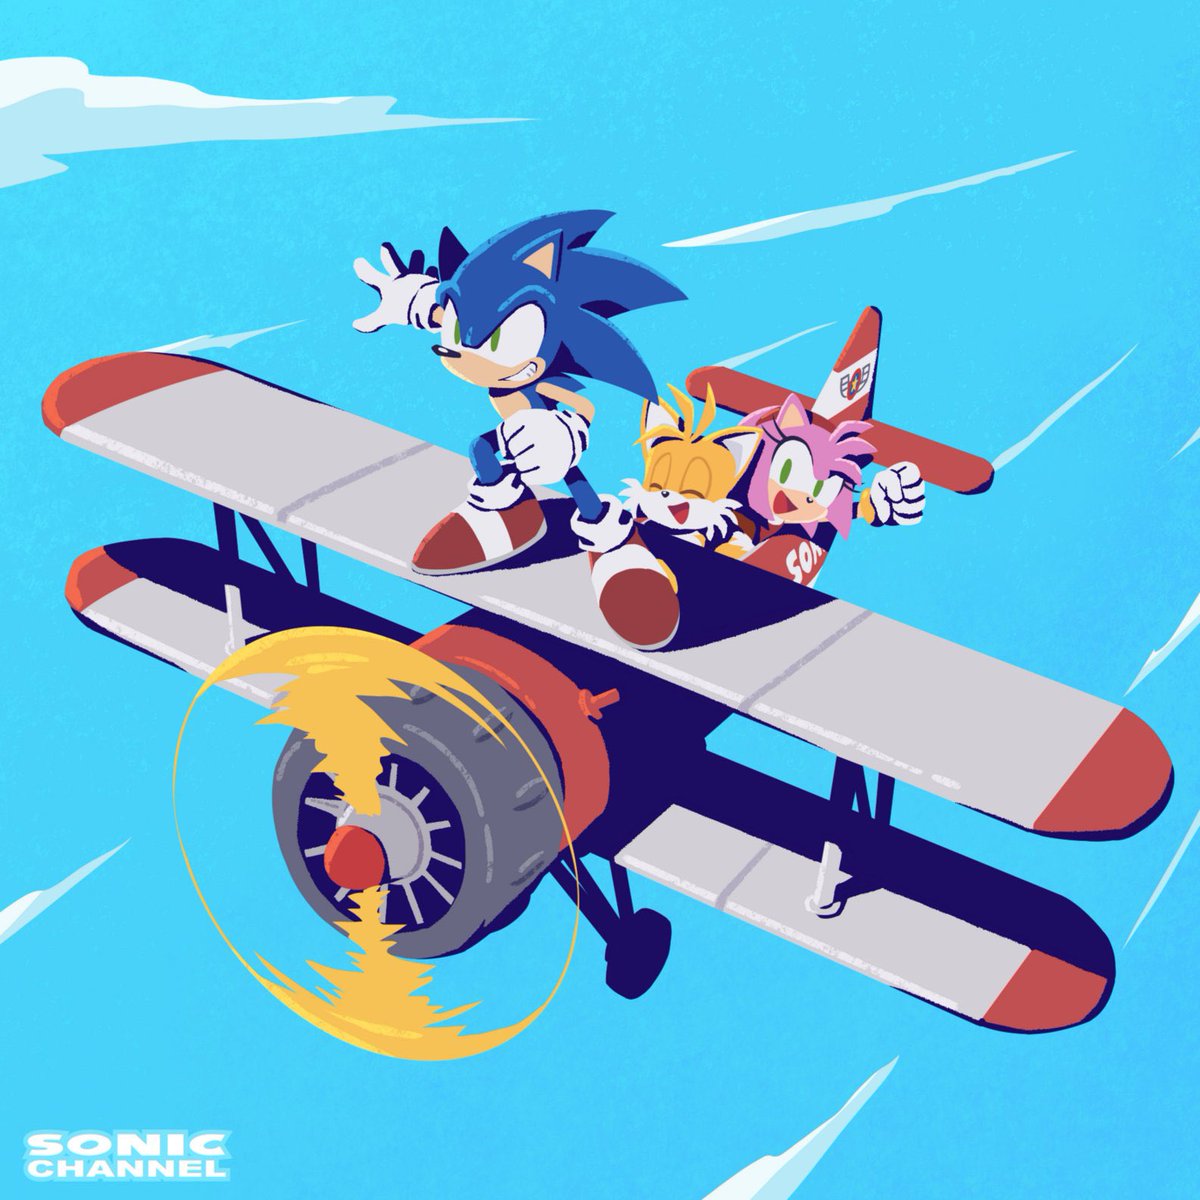 ソニック 「Here's artwork of Sonic, Tails, and Amy 」|Tails' Channel · Sonic the Hedgehog News & Updatesのイラスト